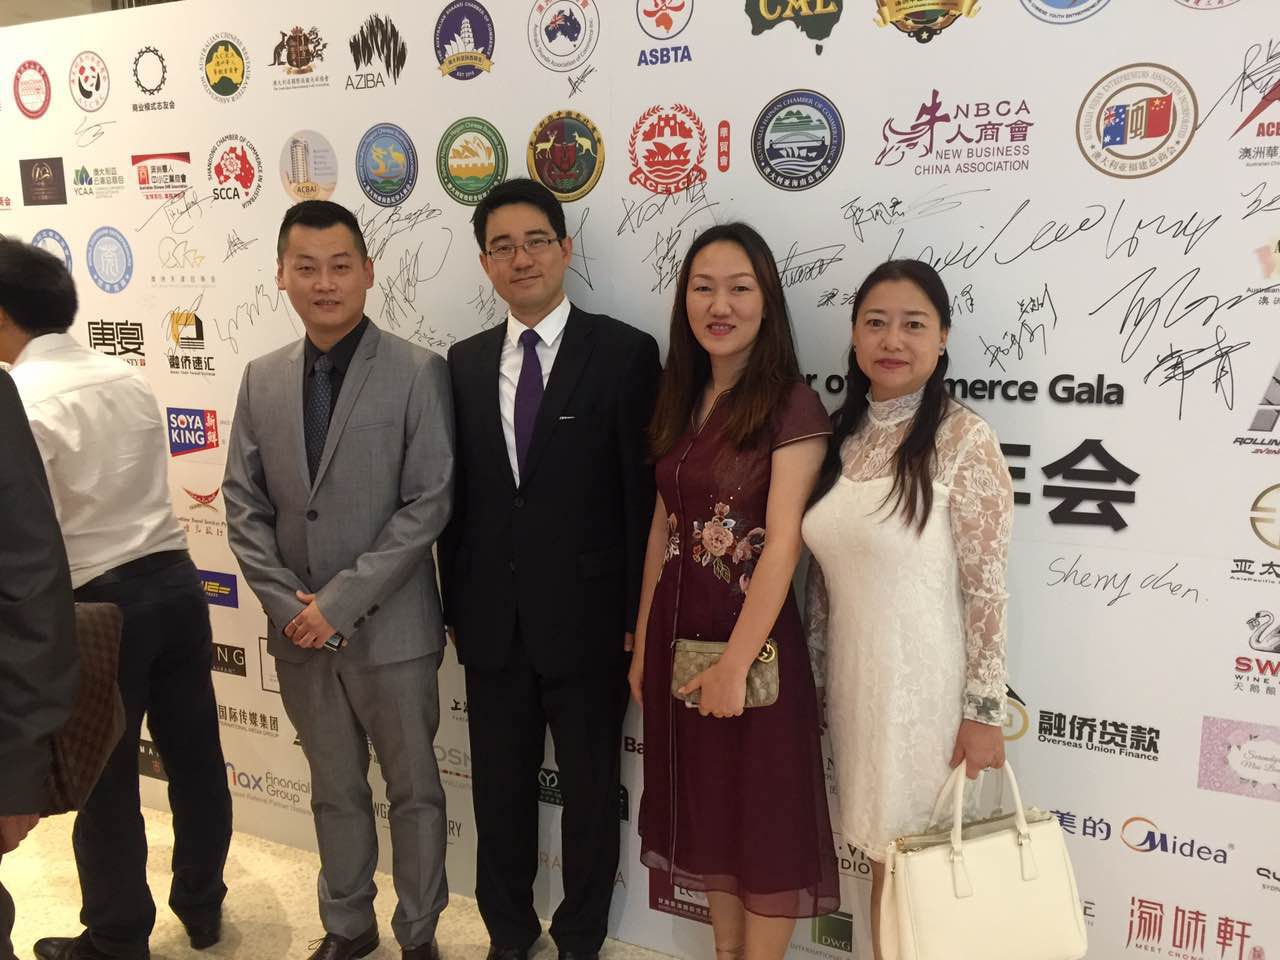 2 2 2016年澳洲华人商会年会在悉尼盛大举行  开创资源共享合作双赢新局面 